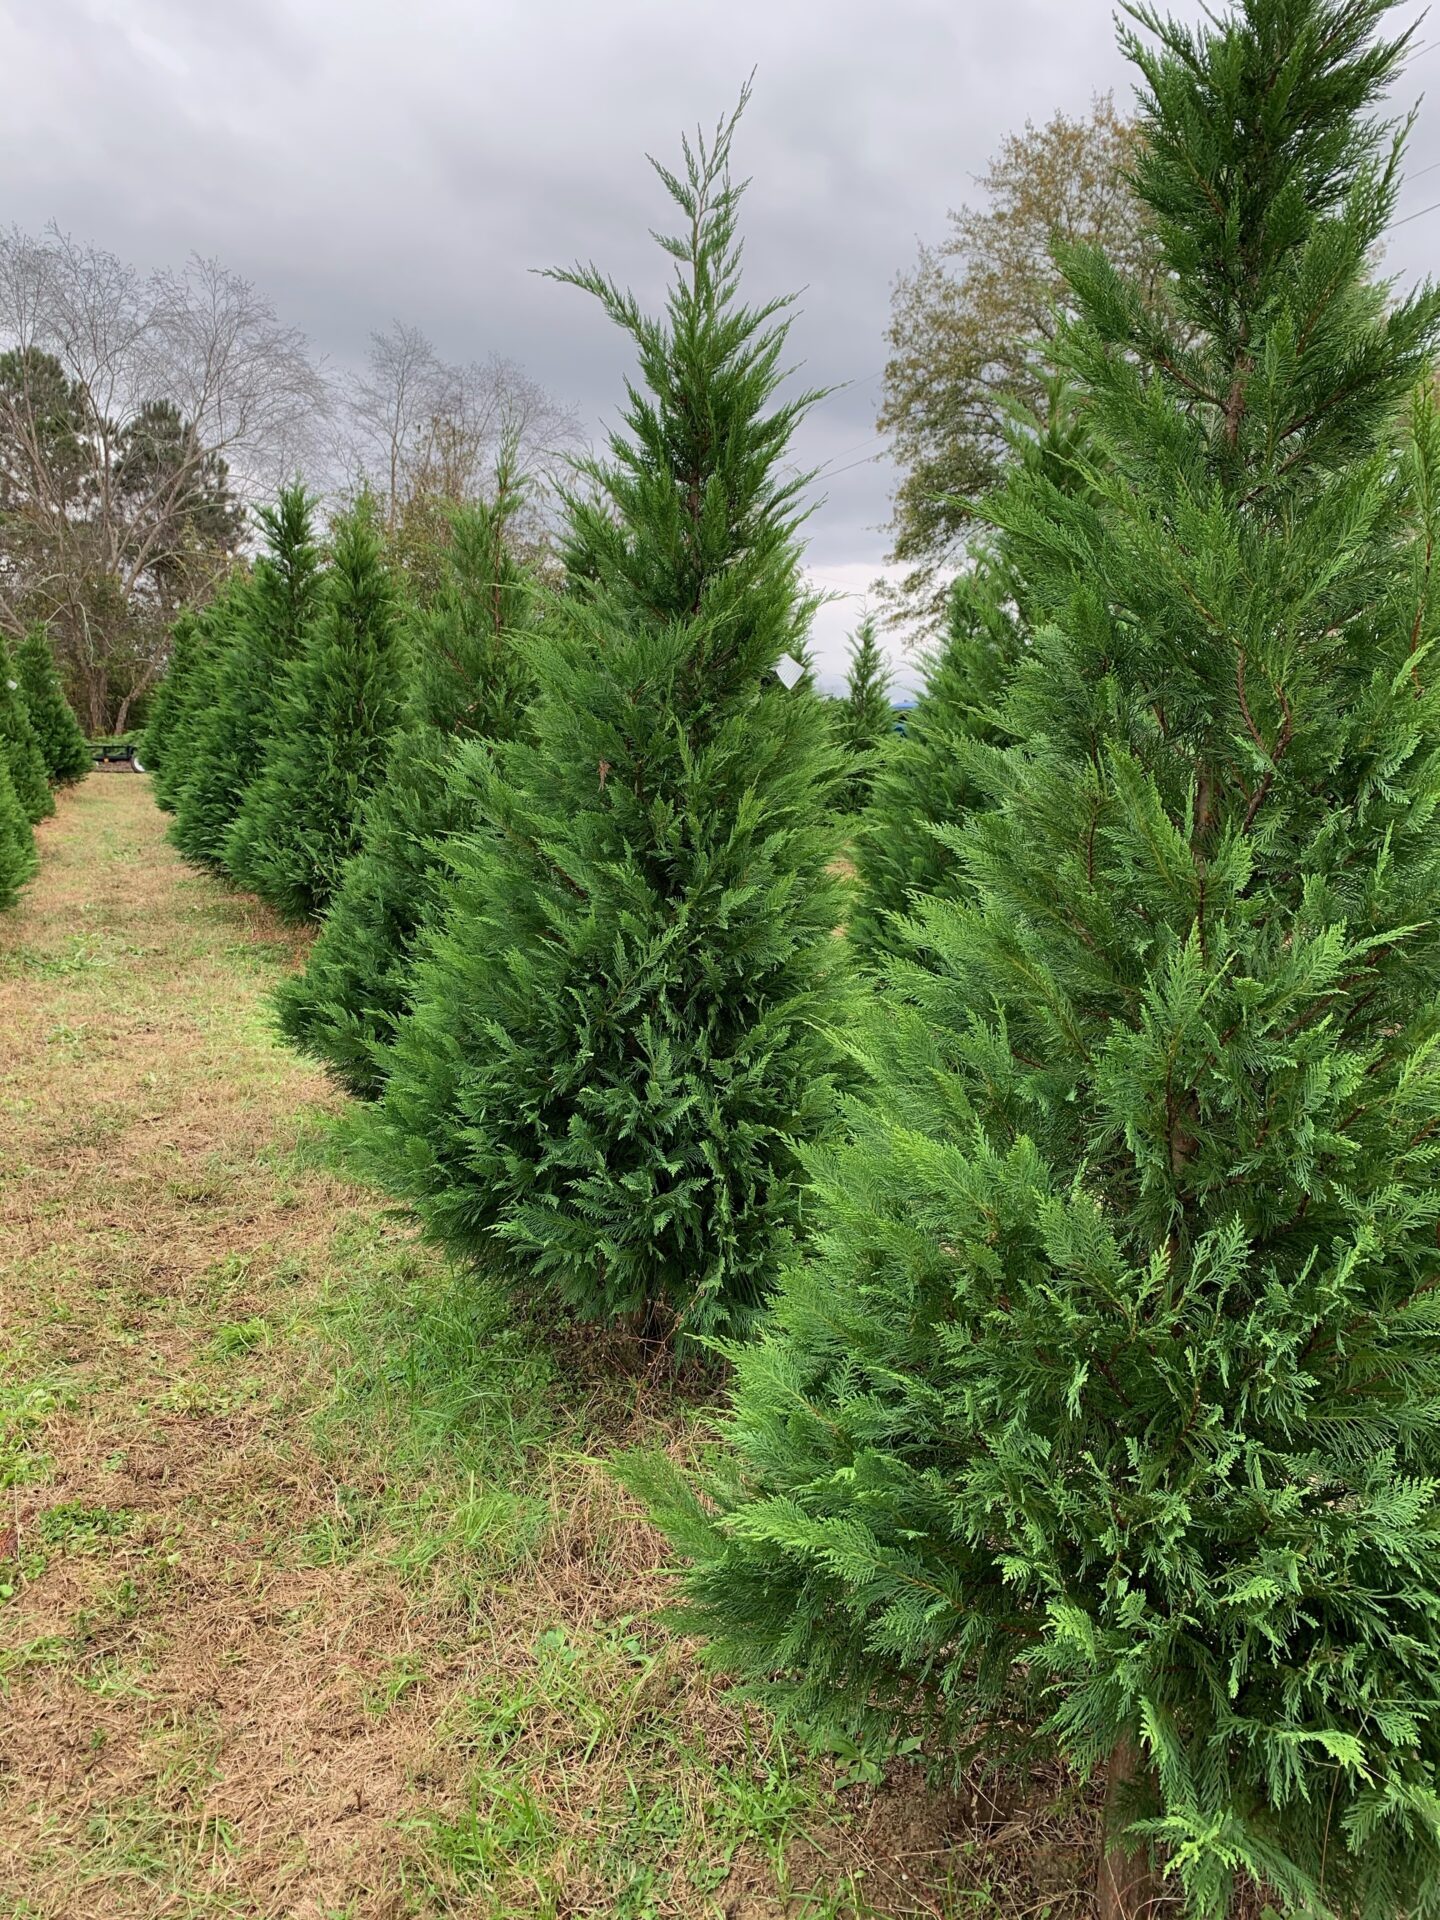 Trees at Christmas Tree Farm in South Carolina